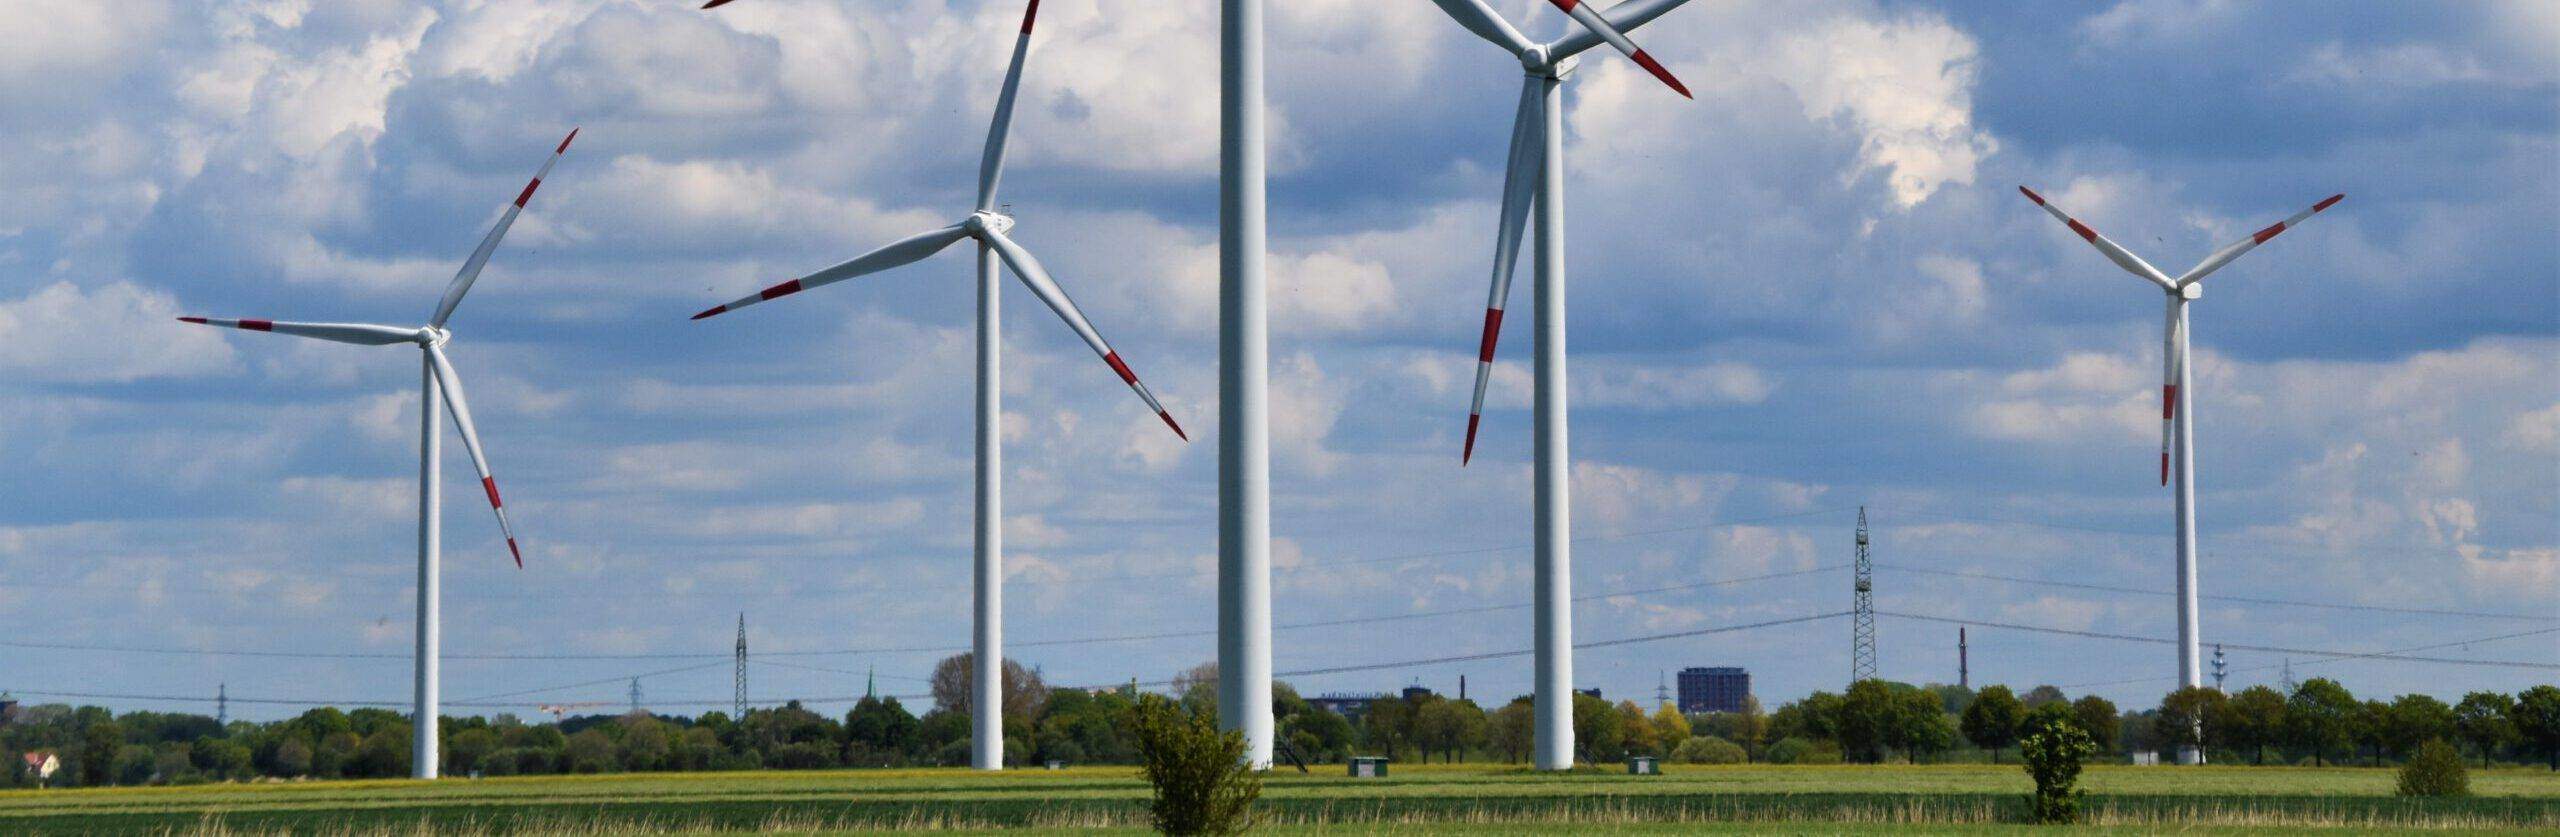 Mehrere Windkraftanlagen stehen in einem Windpark auf einem Feld und erzeugen erneuerbare Energien